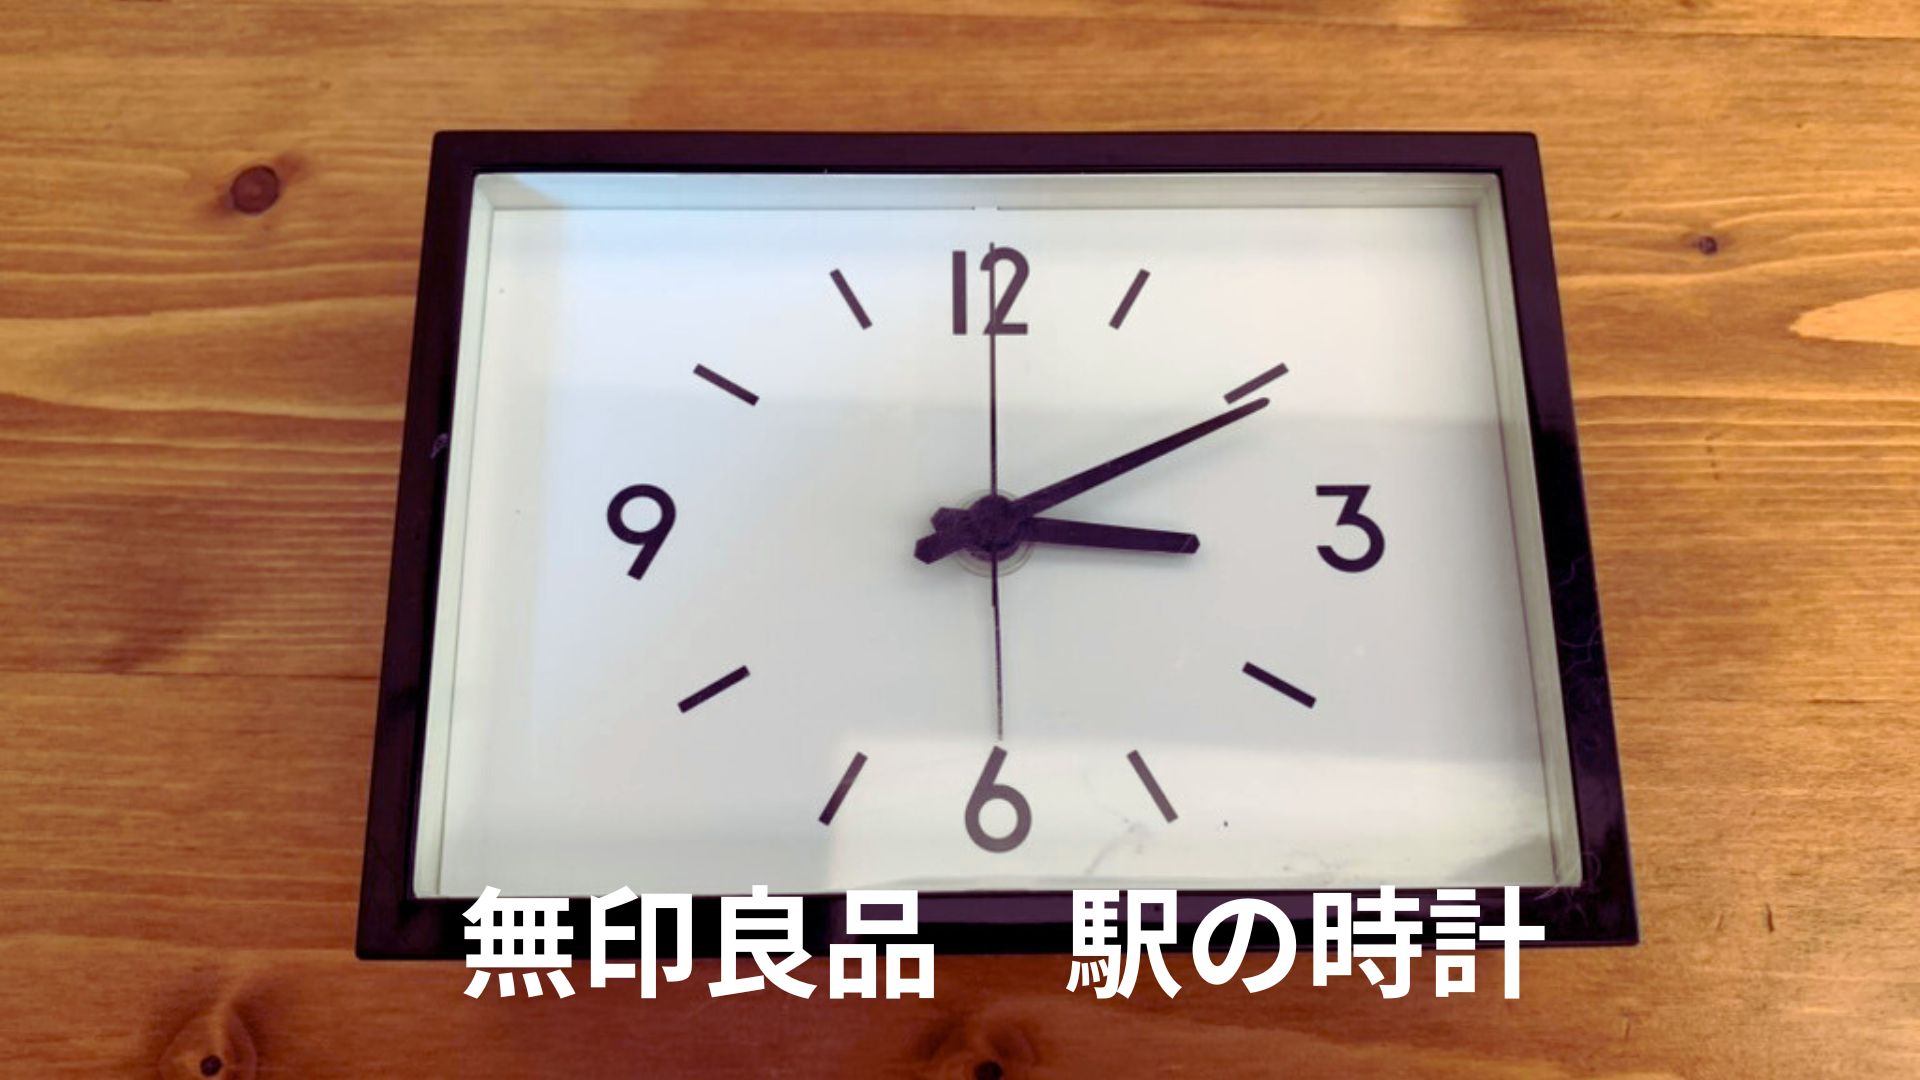 無印良品 駅の時計・アラームクロック - インテリア時計